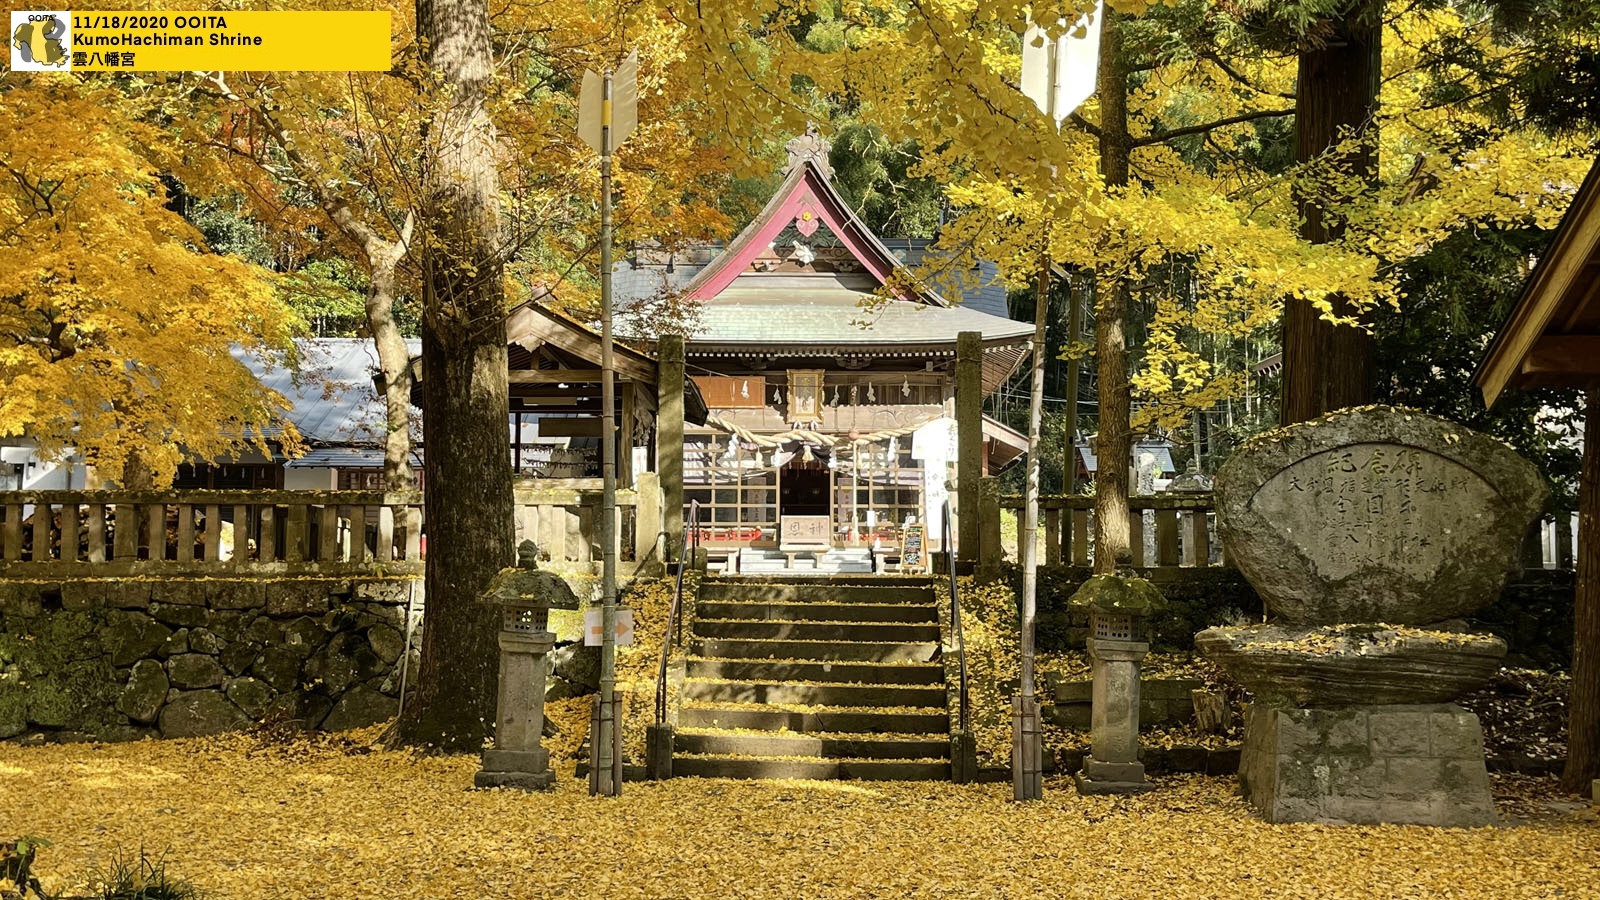 KumoHachiman Shrine